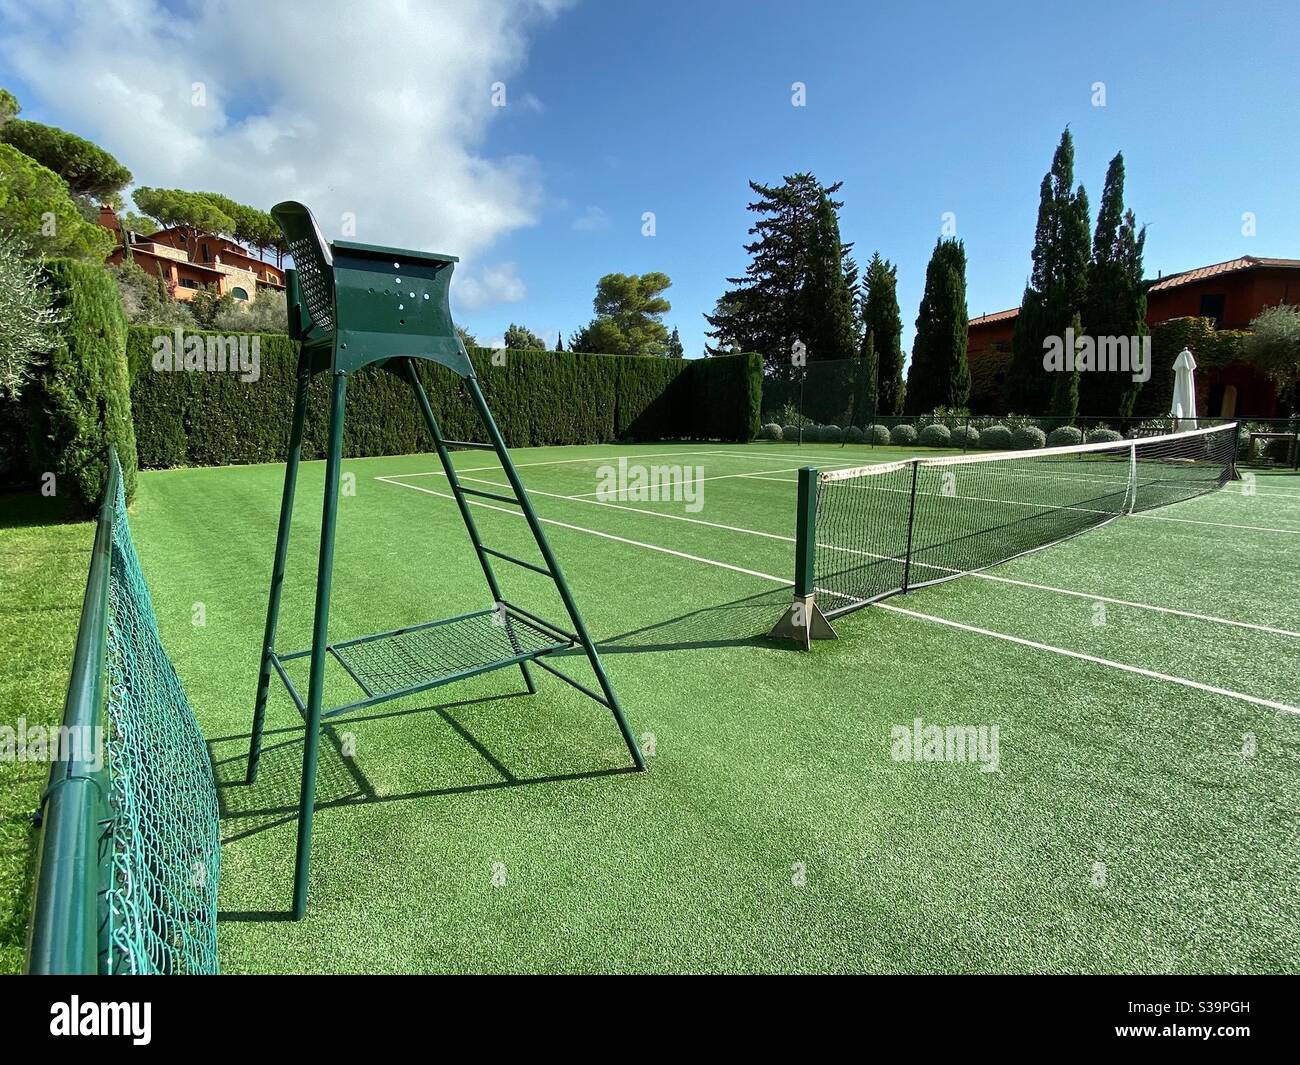 Tennis Court at Hotel Il Pellicano, Tuscany, Italy Stock Photo